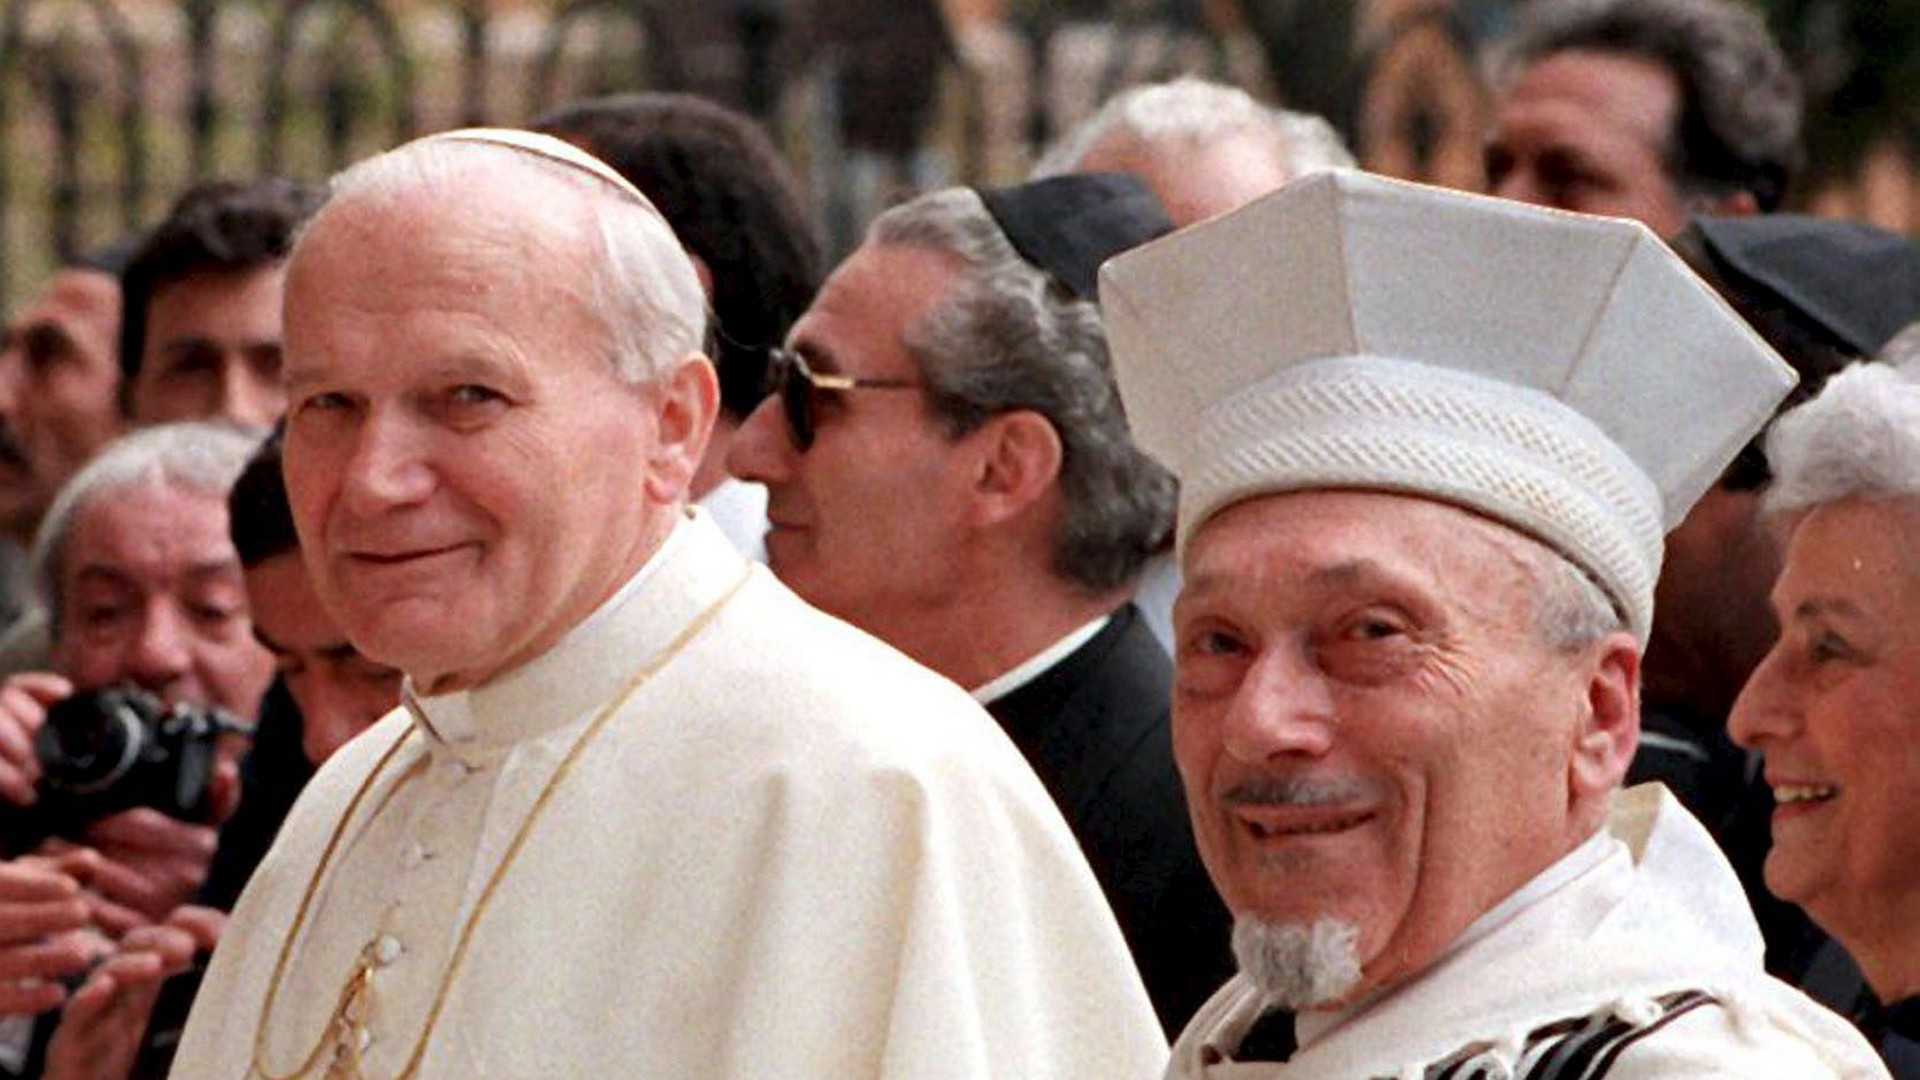 Le Grand Rabbin de Rome, Elio Toaff, reçoit le pape Jean Paul II en 1986 à la Synagogue de Rome (photo Keystone) 